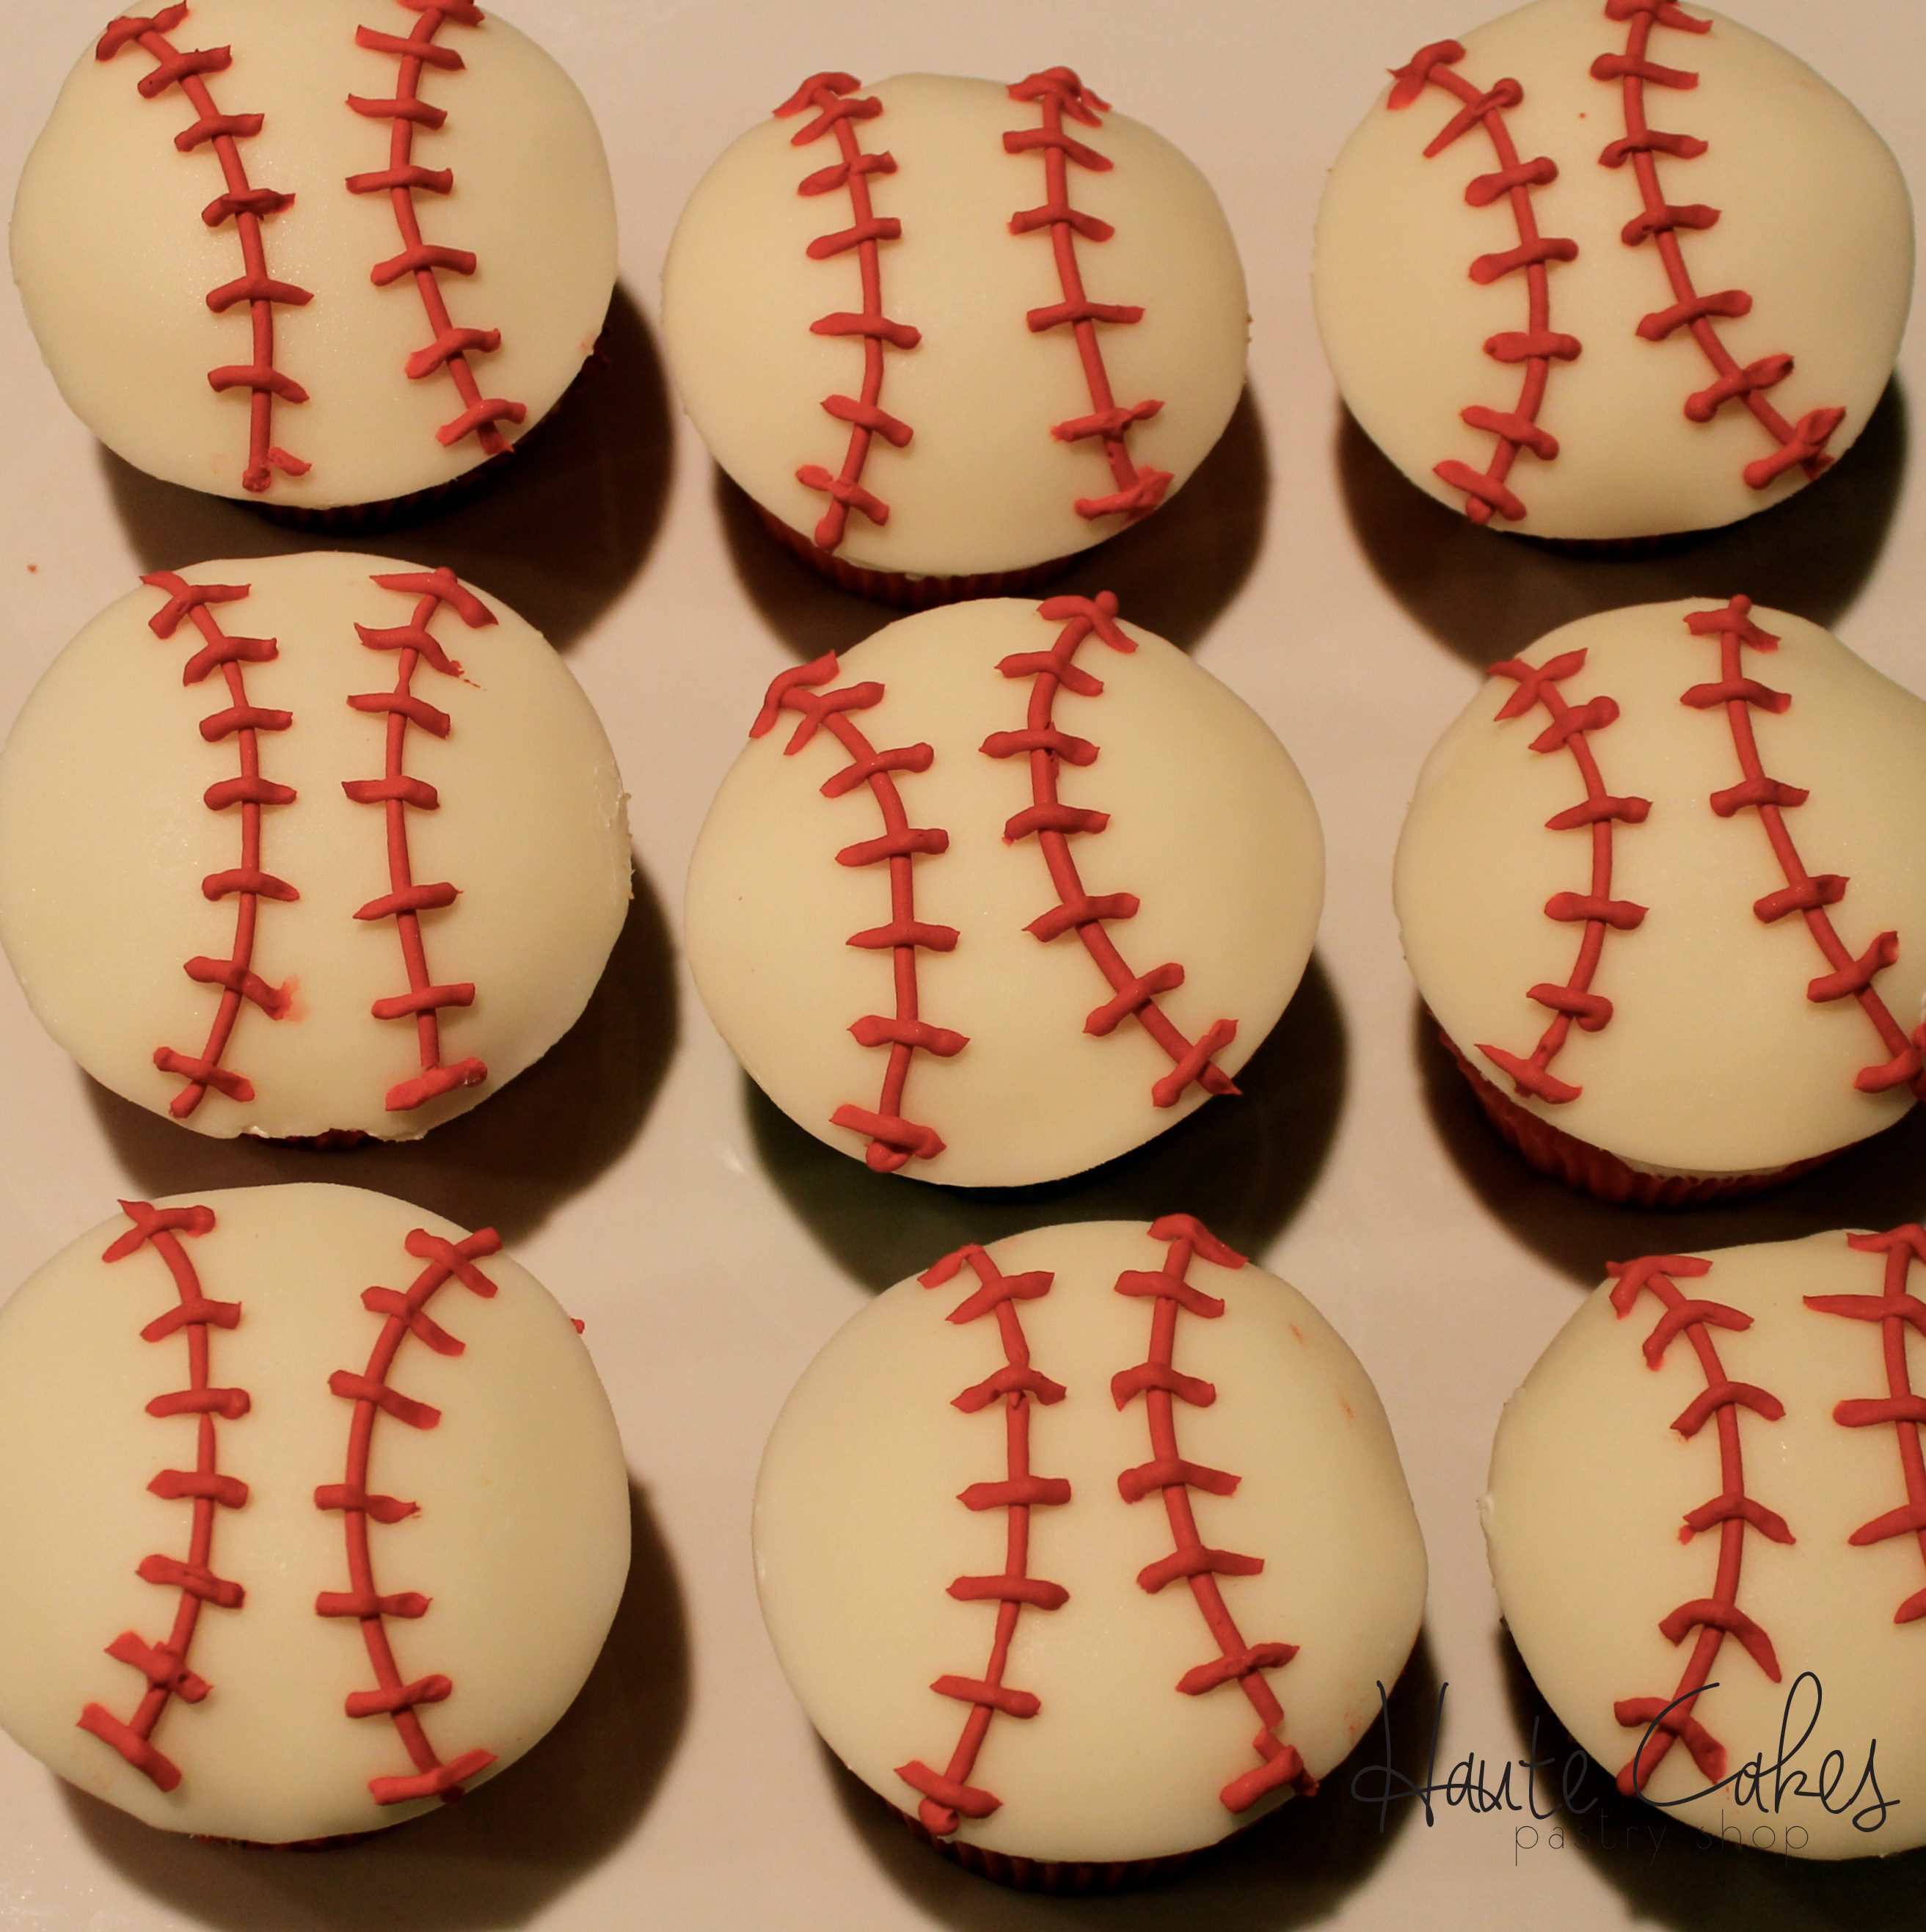 NorthernVirginiaCake SpecialtyCake BirthdayCupcakes Baseball